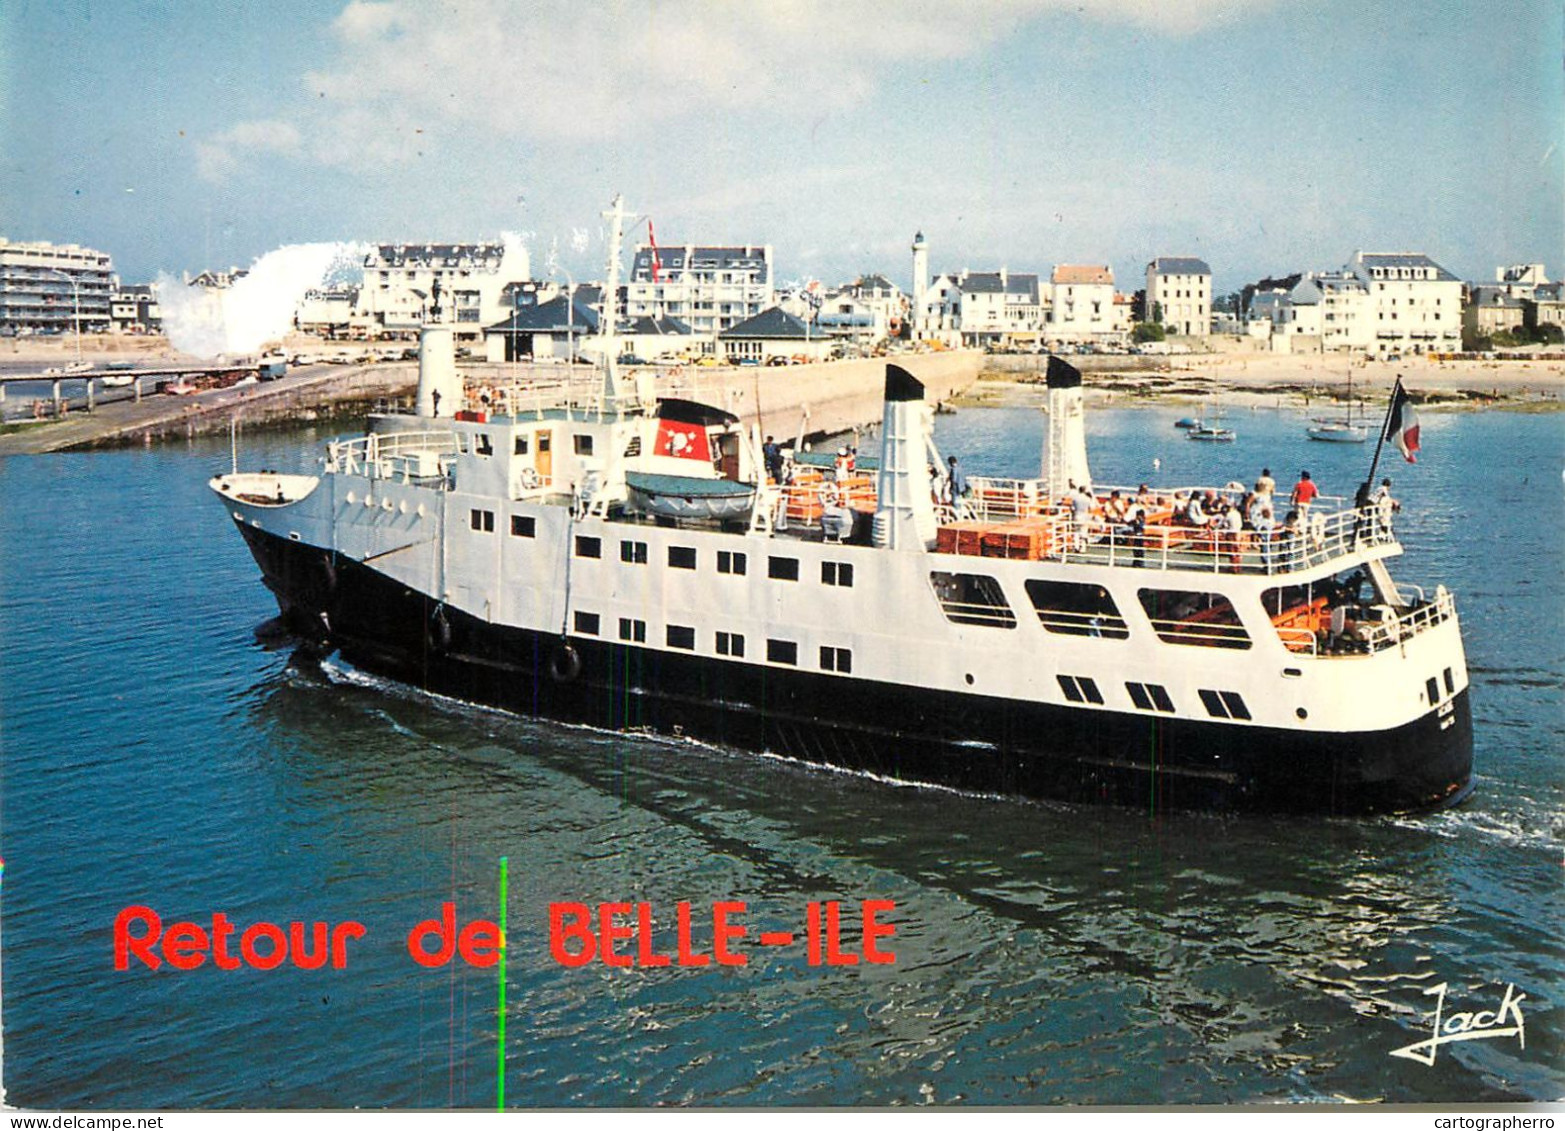 Navigation Sailing Vessels & Boats Themed Postcard Retour De Belle Ile Pleasure Cruise - Segelboote